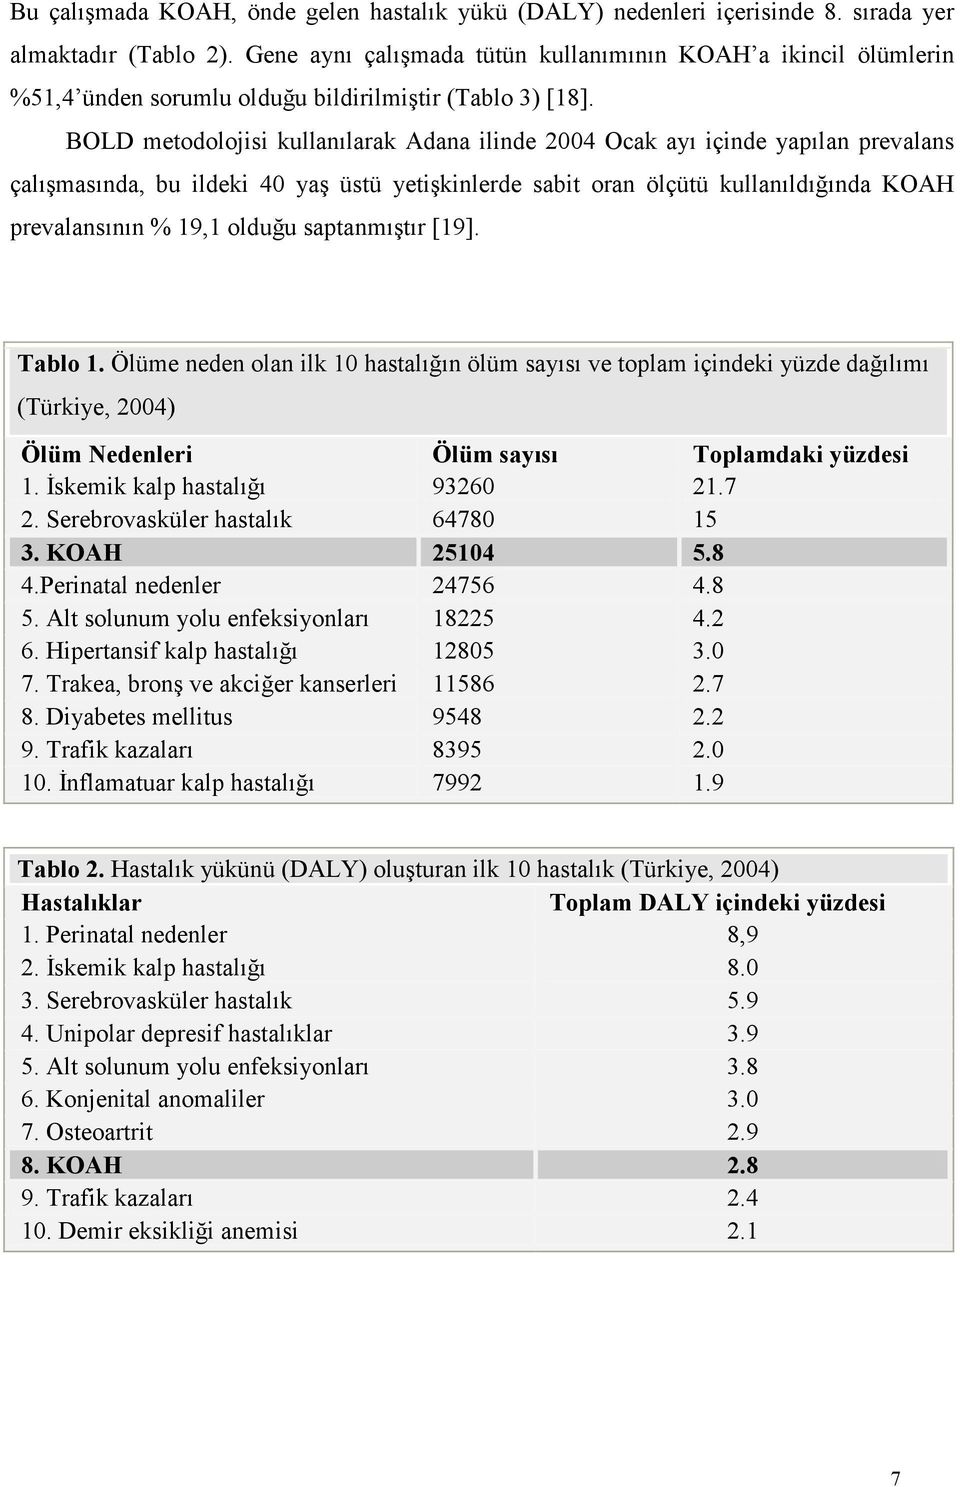 BOLD metodolojisi kullanılarak Adana ilinde 2004 Ocak ayı içinde yapılan prevalans çalışmasında, bu ildeki 40 yaş üstü yetişkinlerde sabit oran ölçütü kullanıldığında KOAH prevalansının % 19,1 olduğu